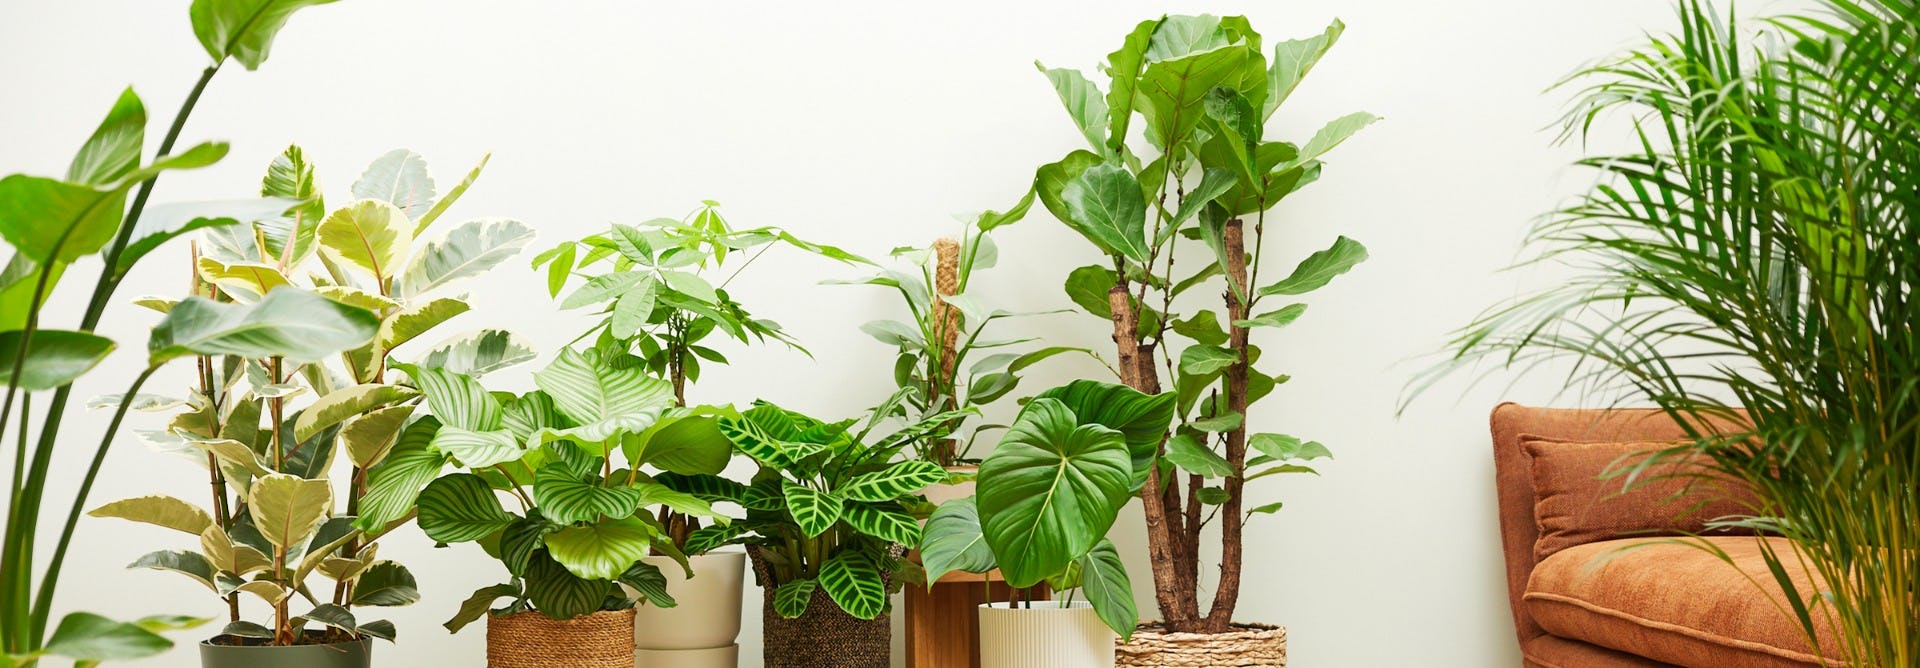 Le migliori piante da appartamento vere che richiedono poche cure